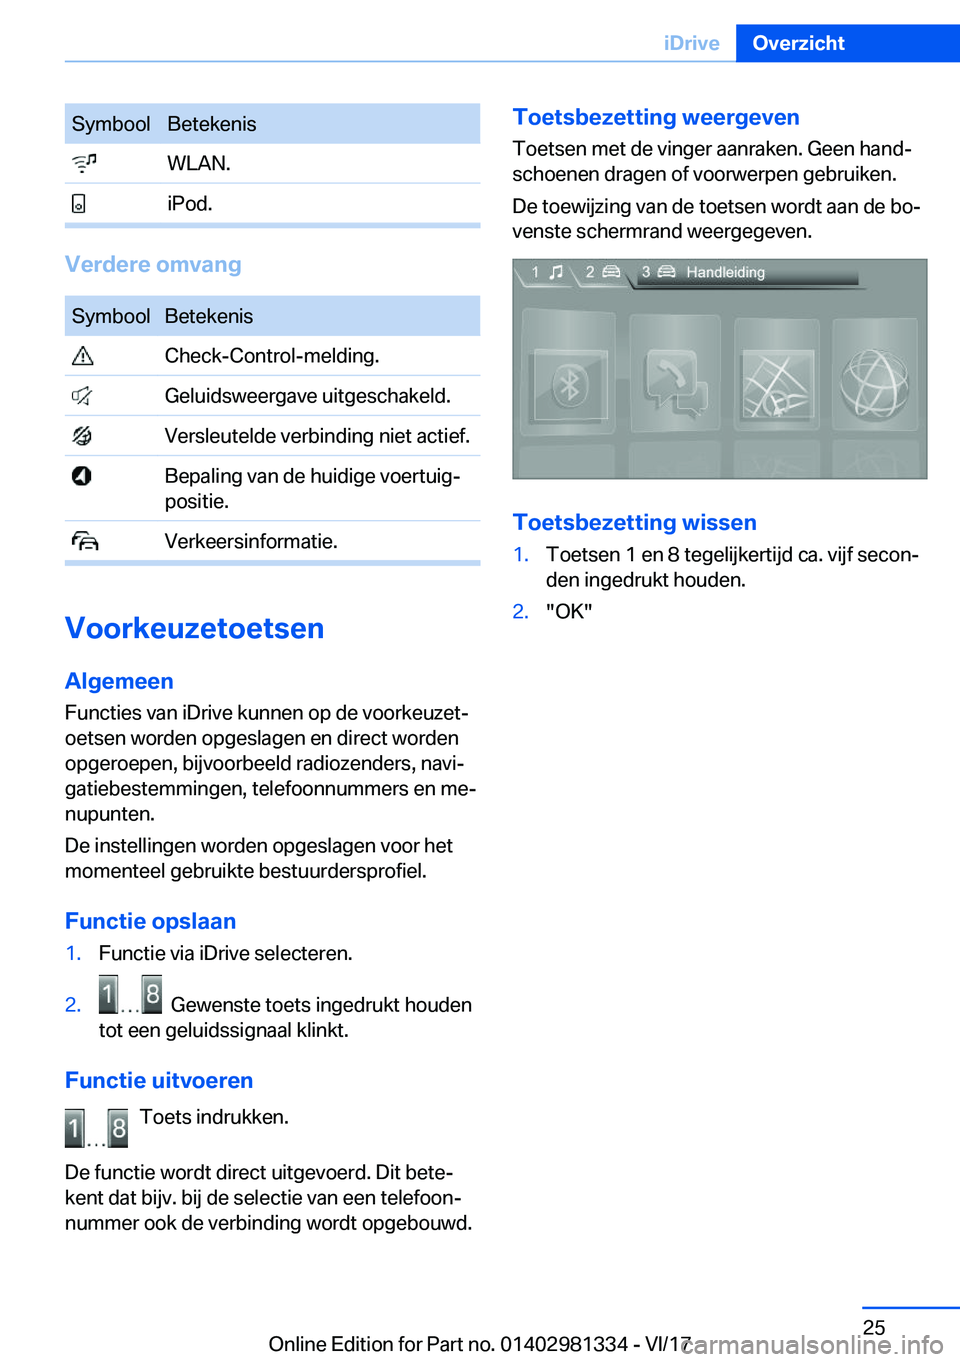 BMW X4 2018  Instructieboekjes (in Dutch) �S�y�m�b�o�o�l�B�e�t�e�k�e�n�i�s� �W�L�A�N�.� �i�P�o�d�.
�V�e�r�d�e�r�e��o�m�v�a�n�g
�S�y�m�b�o�o�l�B�e�t�e�k�e�n�i�s� �C�h�e�c�k�-�C�o�n�t�r�o�l�-�m�e�l�d�i�n�g�.� �G�e�l�u�i�d�s�w�e�e�r�g�a�v�e� �u